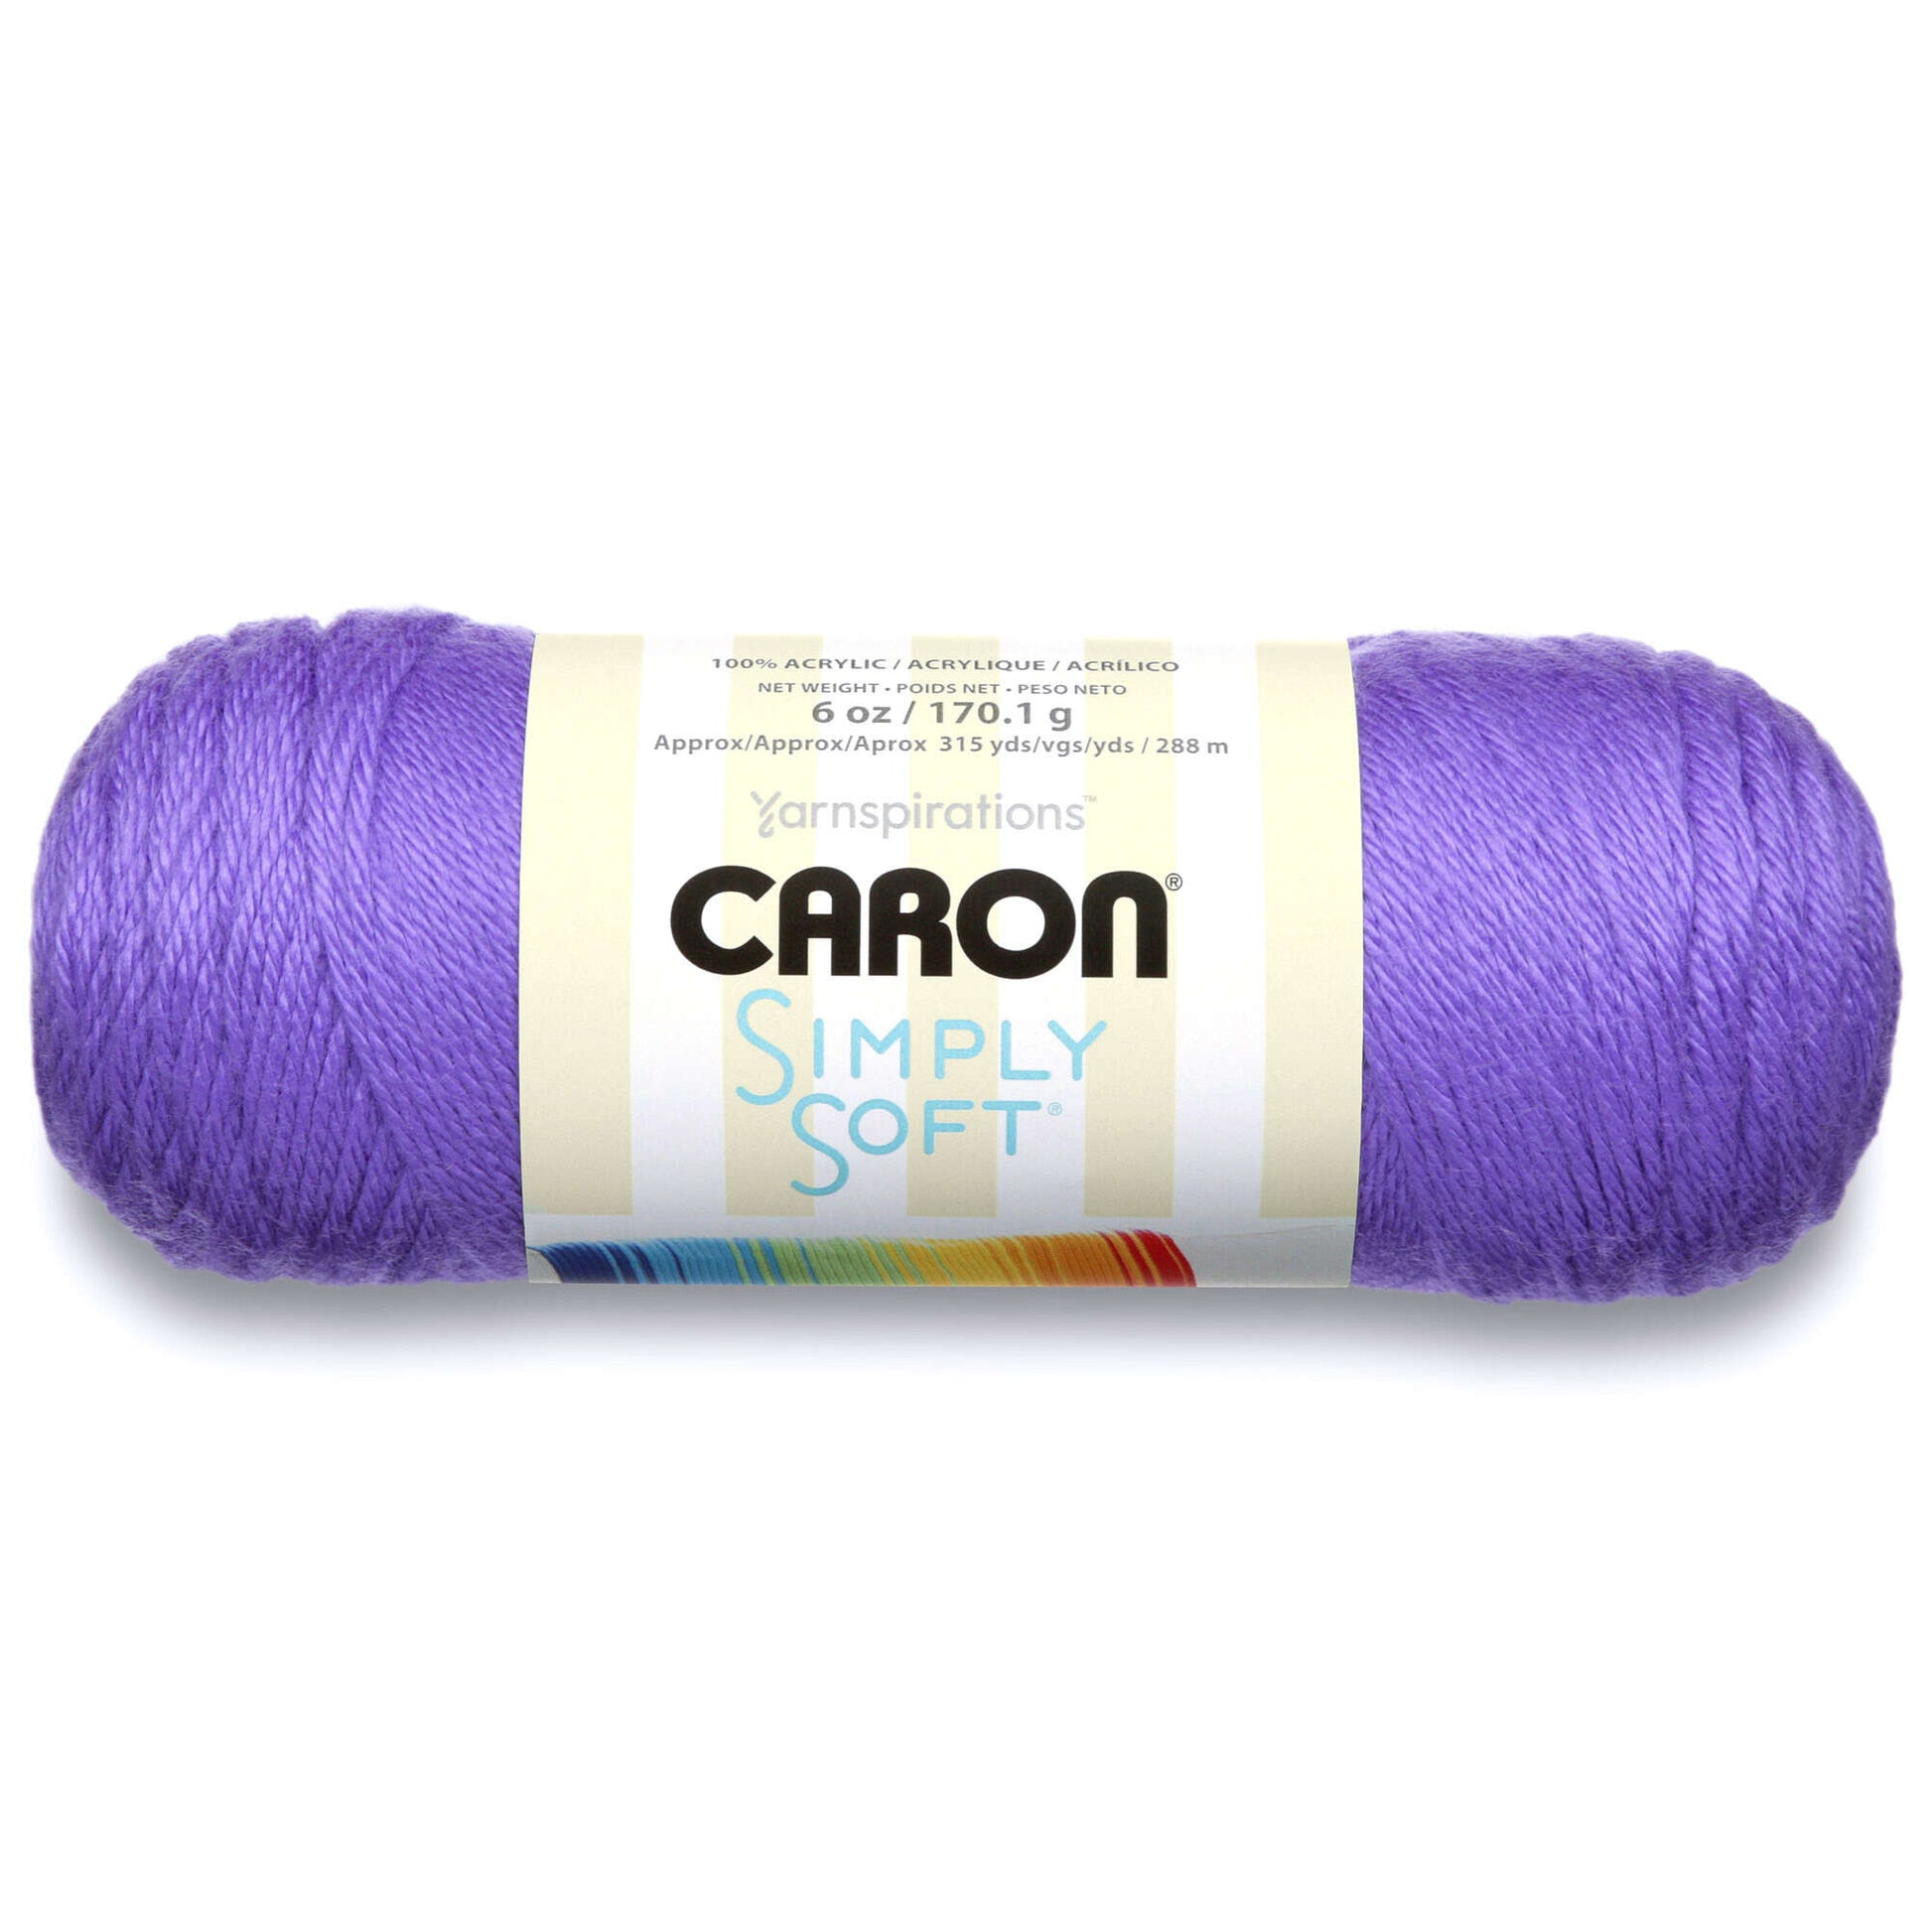 Caron Simply Soft Brites Yarn - Blue Mint